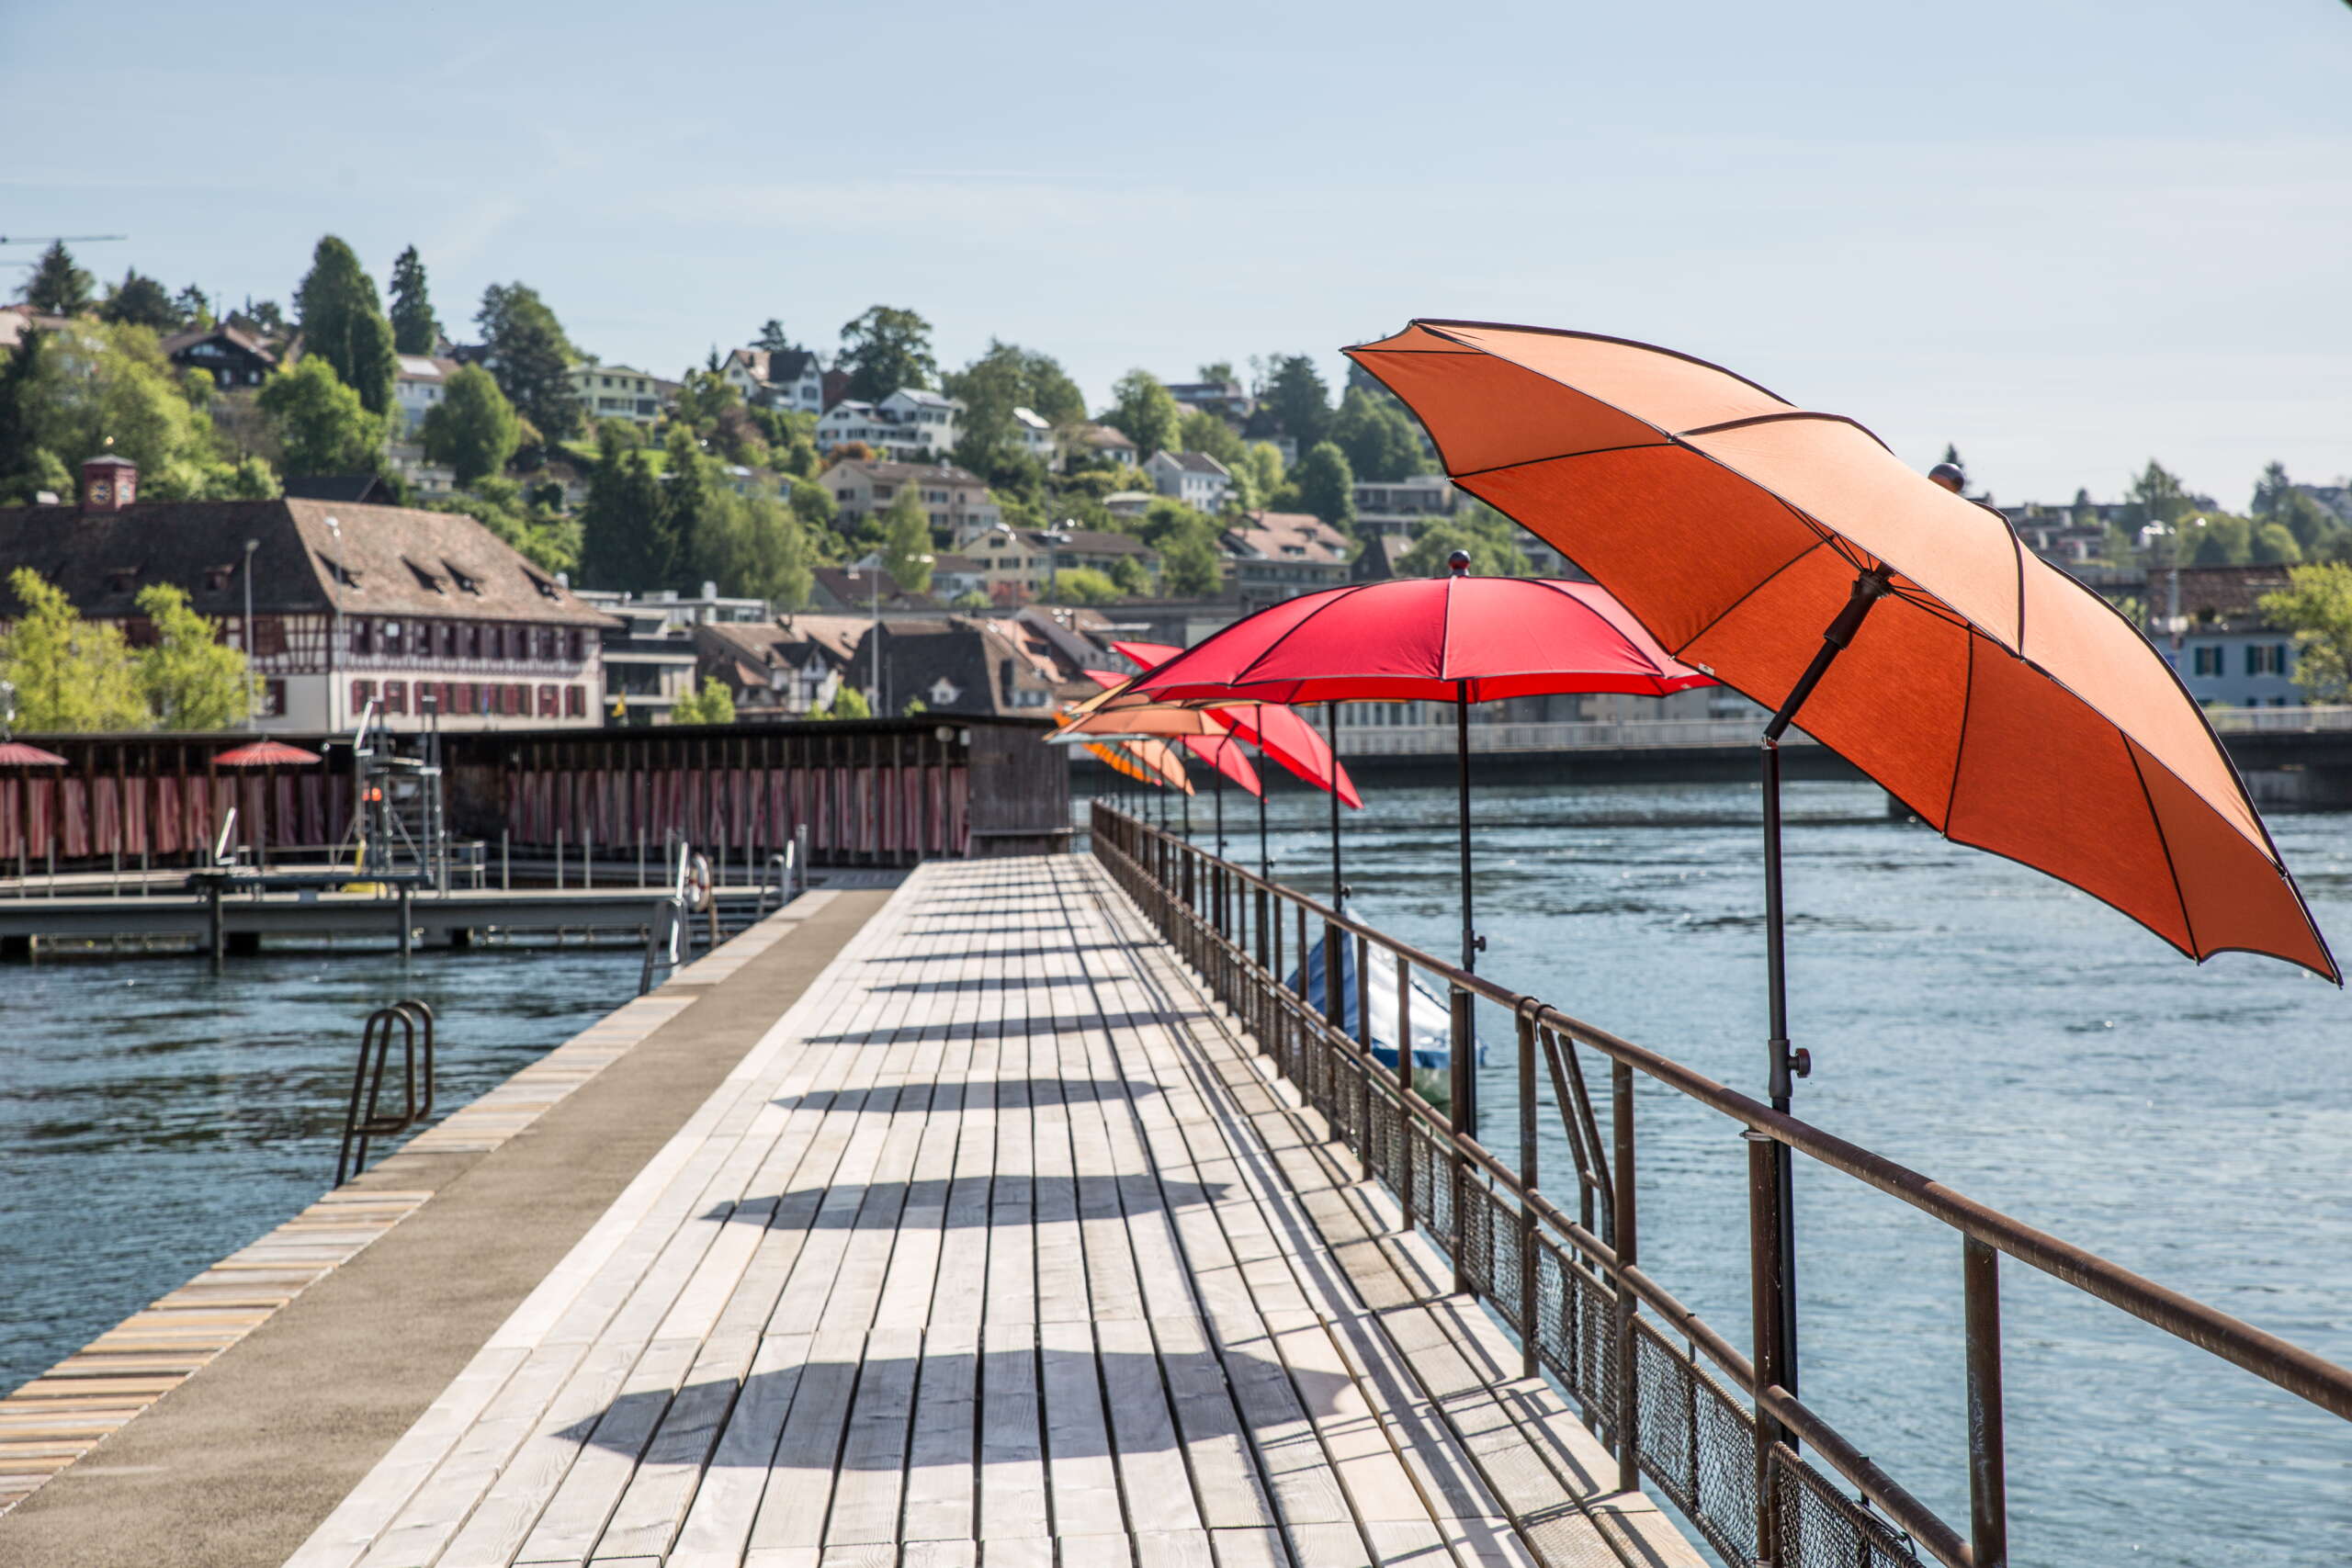 Kastenbad direkt im Rhein mit roten Sonnenschirmen. Im Spitz des Kastenbades sind Umkleidekabinen mit rot weiss gestreiften Vorhängen.